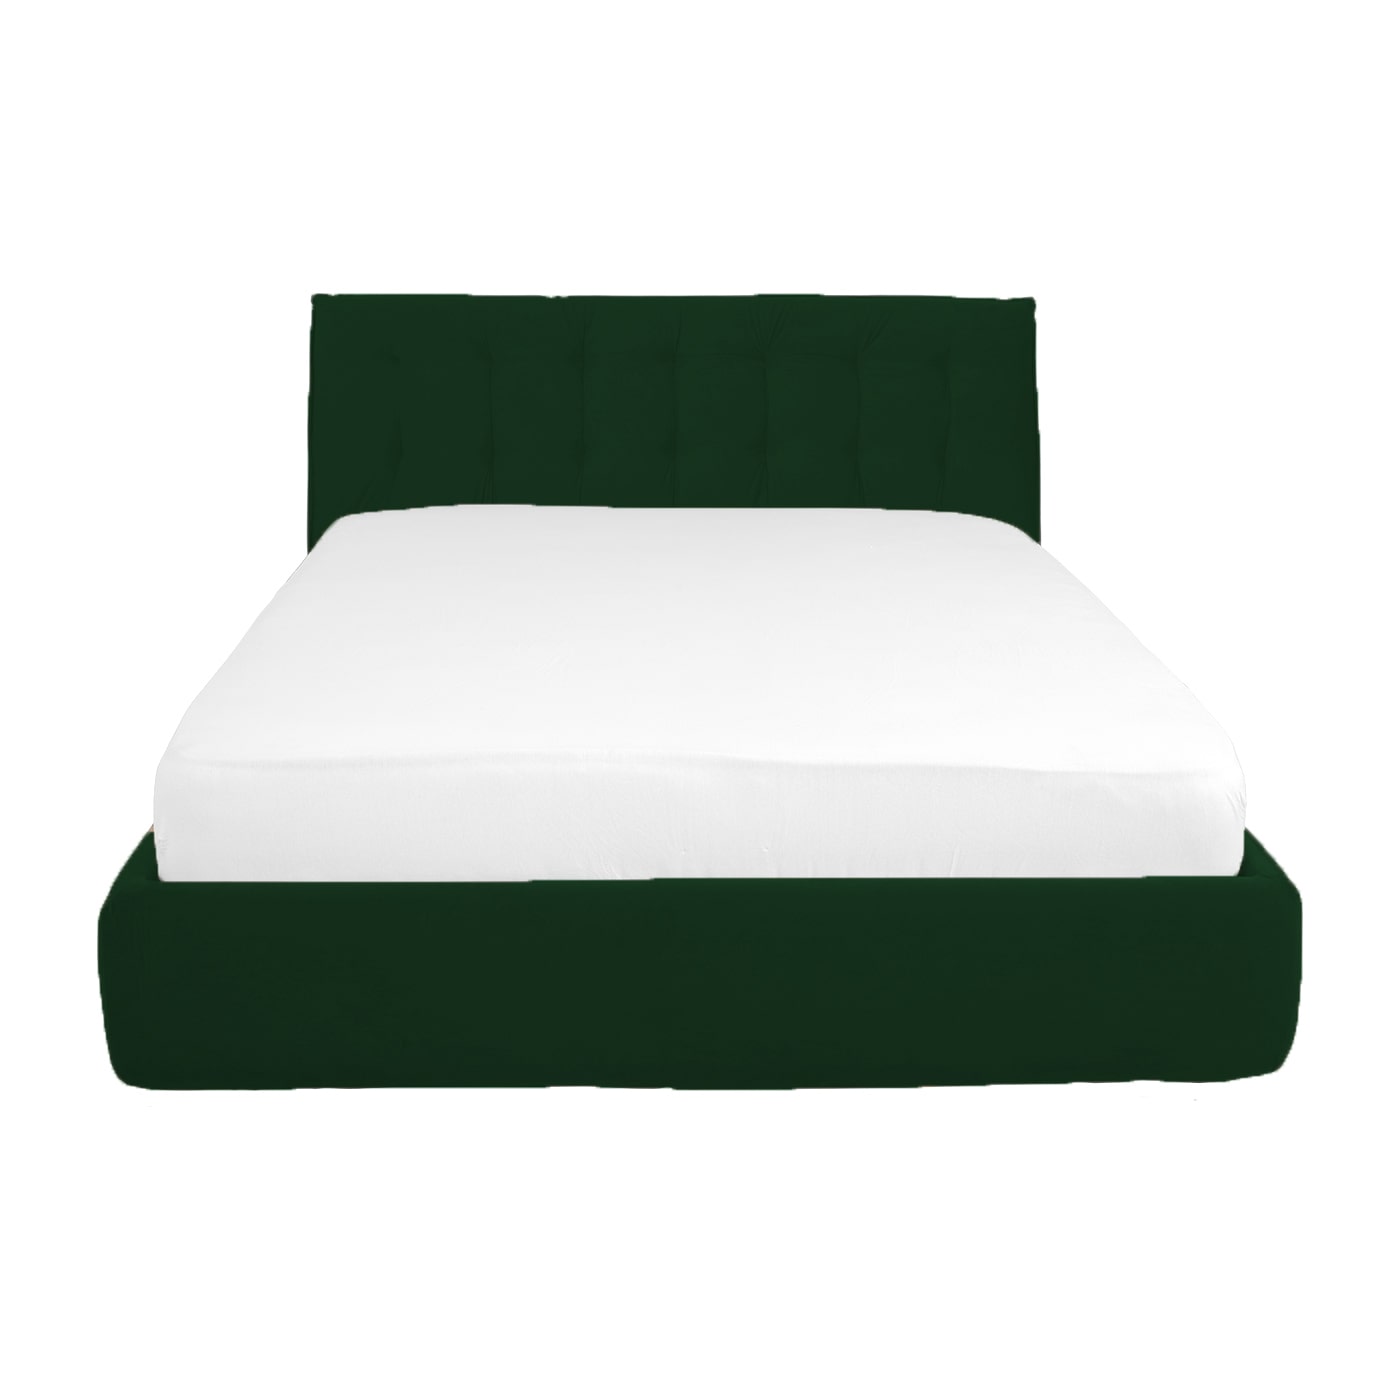 RIMINI, pat tapitat verde inchis cu somiera si lada de depozitare rabadabila pentru dormitor, 160x200